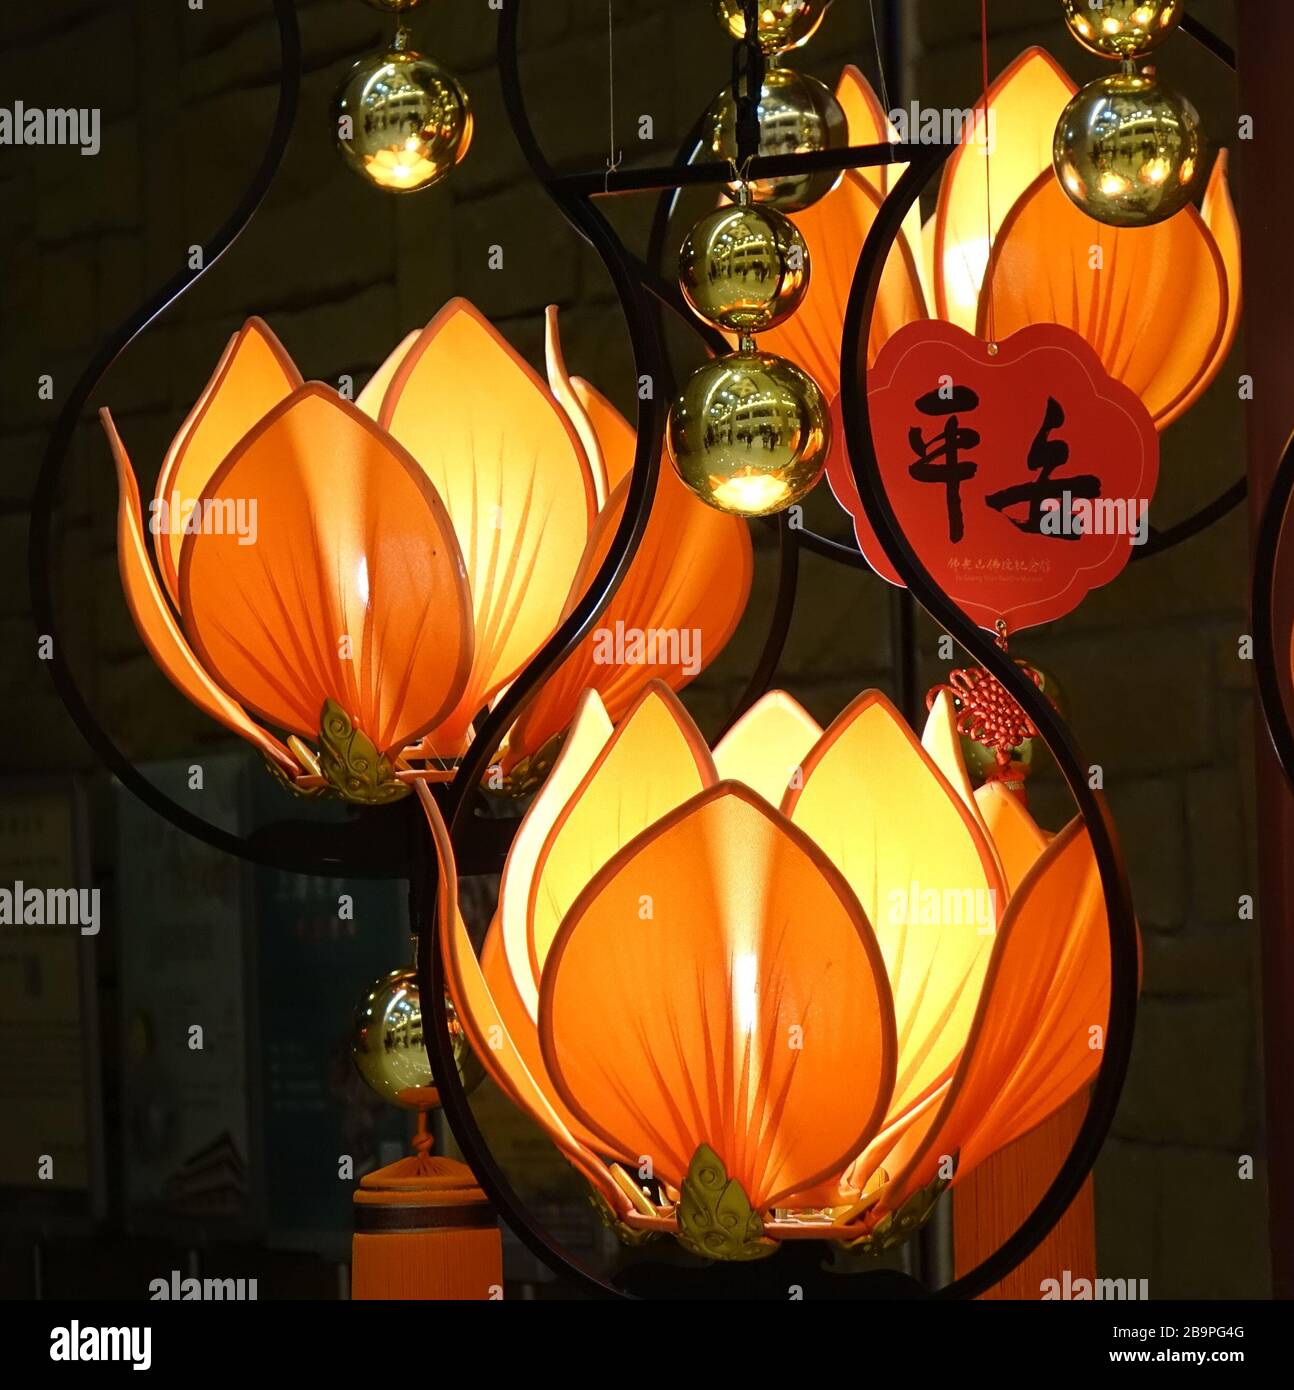 KAOHSIUNG, TAIWAN - 25. JANUAR 2020: Lampen in Form des buddhistischen Symbols der lotosblüten. Das chinesische Wort bedeutet "Frieden". Stockfoto